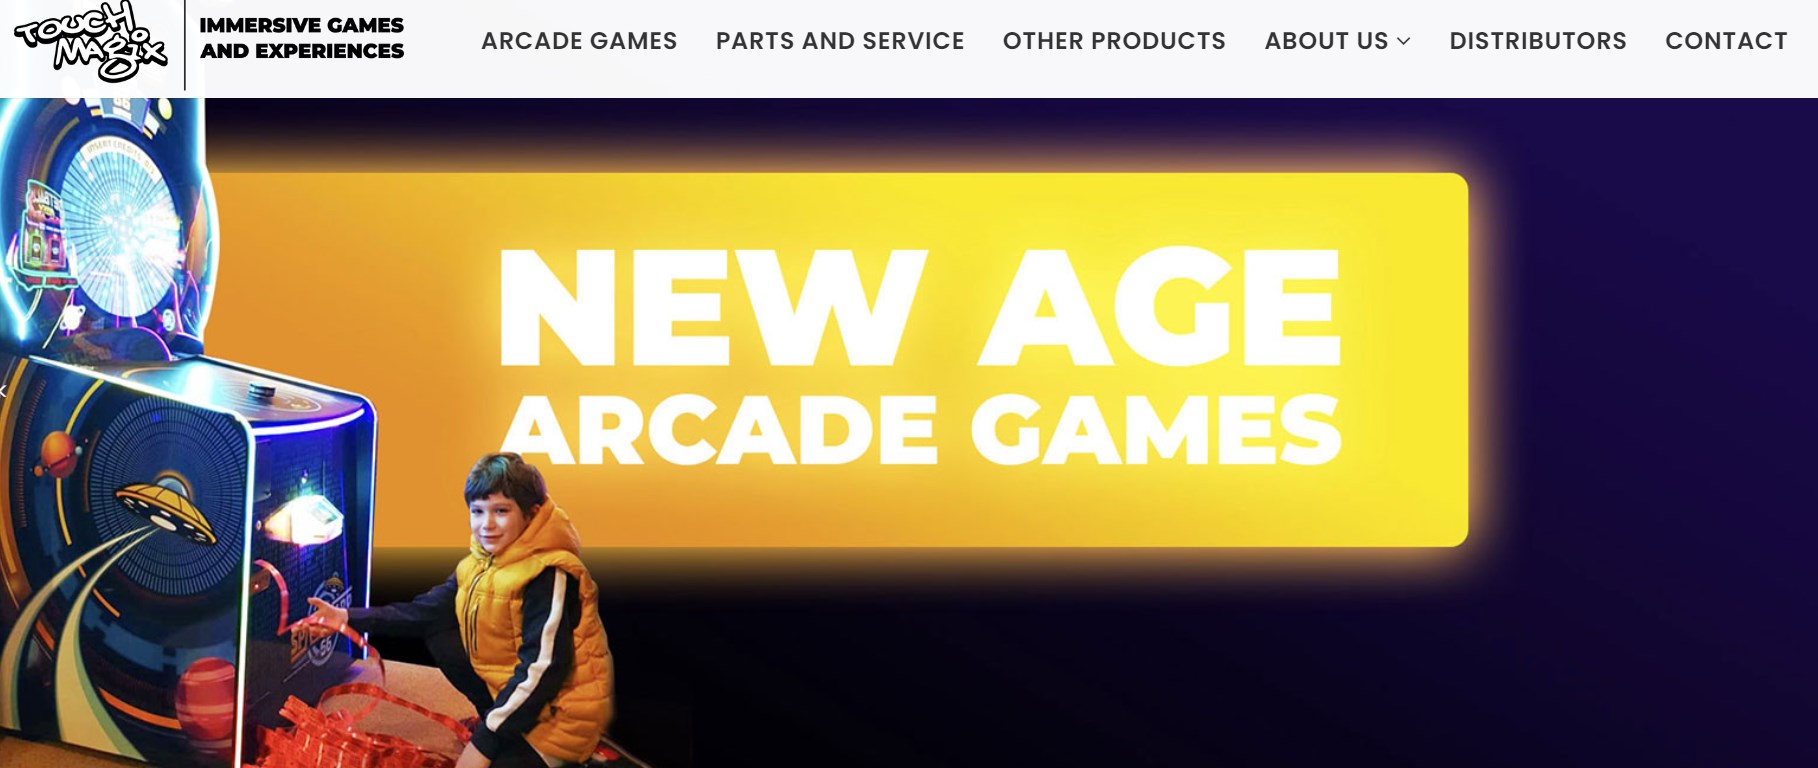 TOUCH MAGIX BALL DROPPER ARCADE GAME manufacturer brands